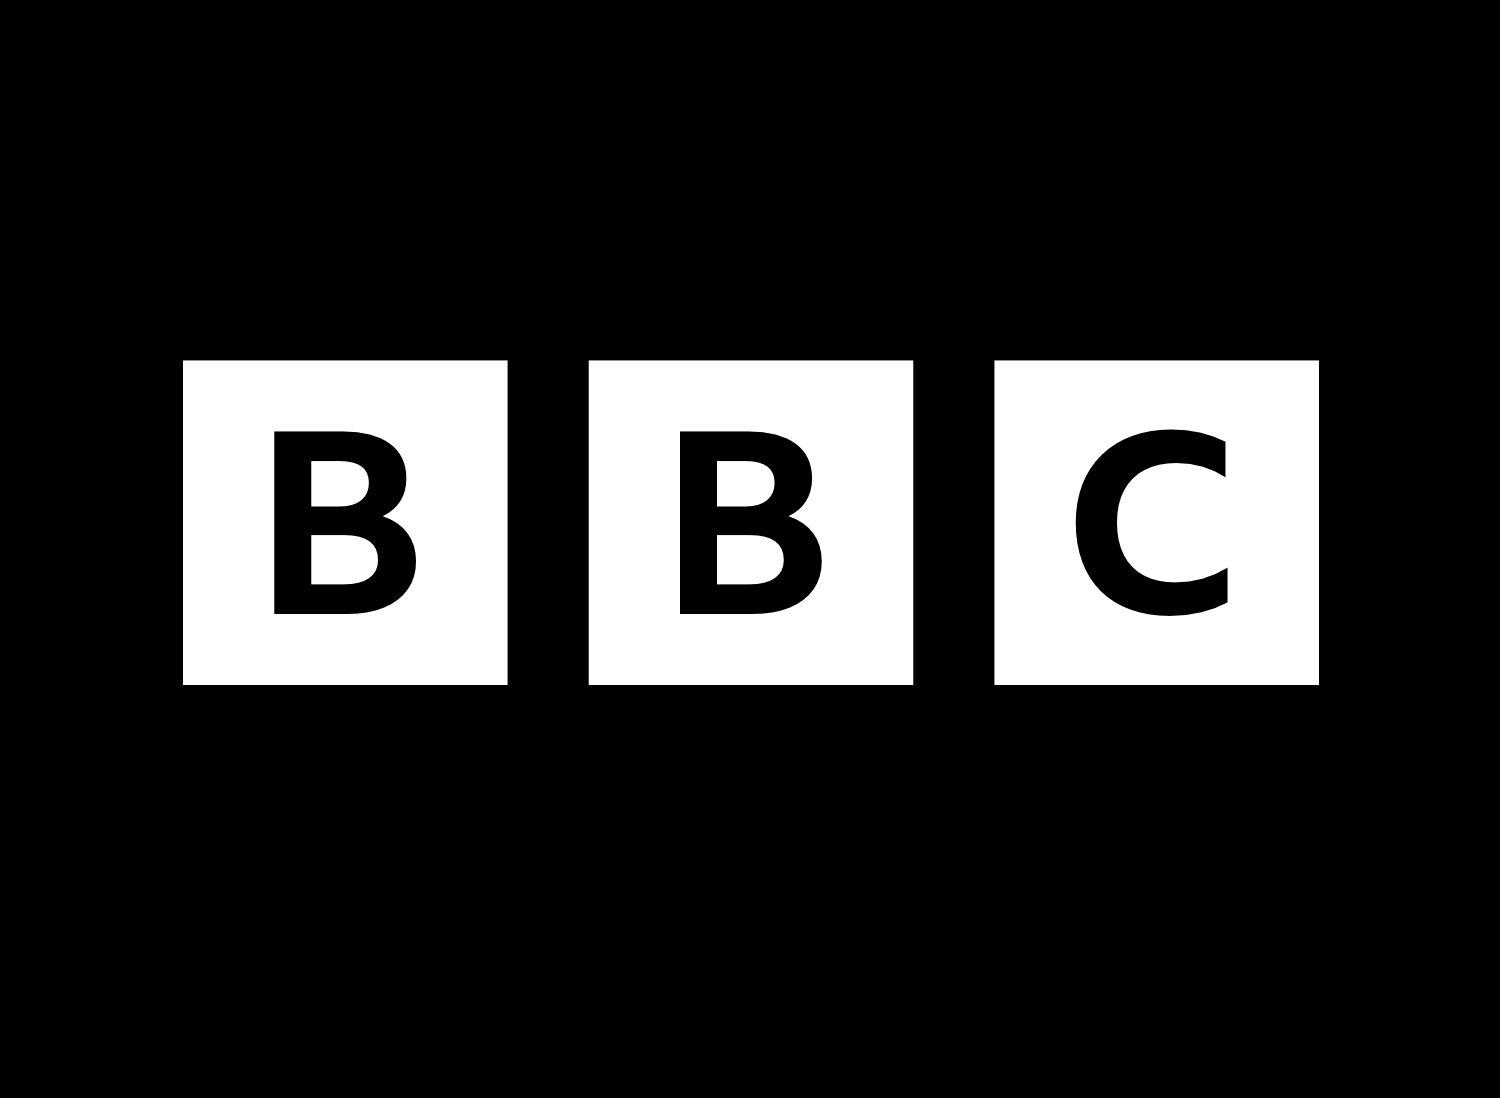 لوگو BBC